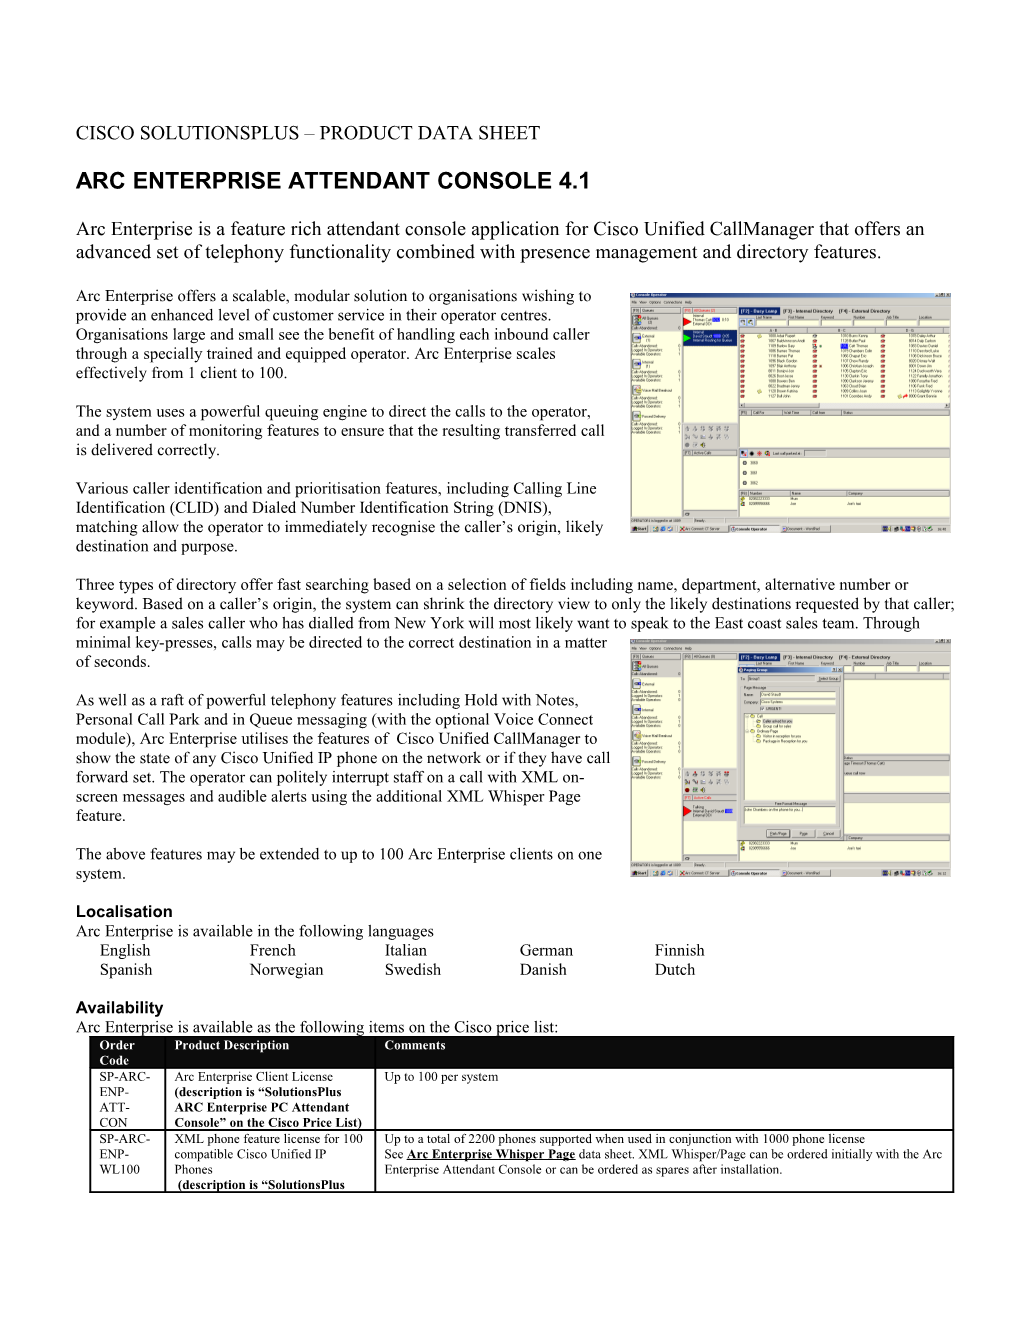 Arc Enterprise Attendant Console 4.1